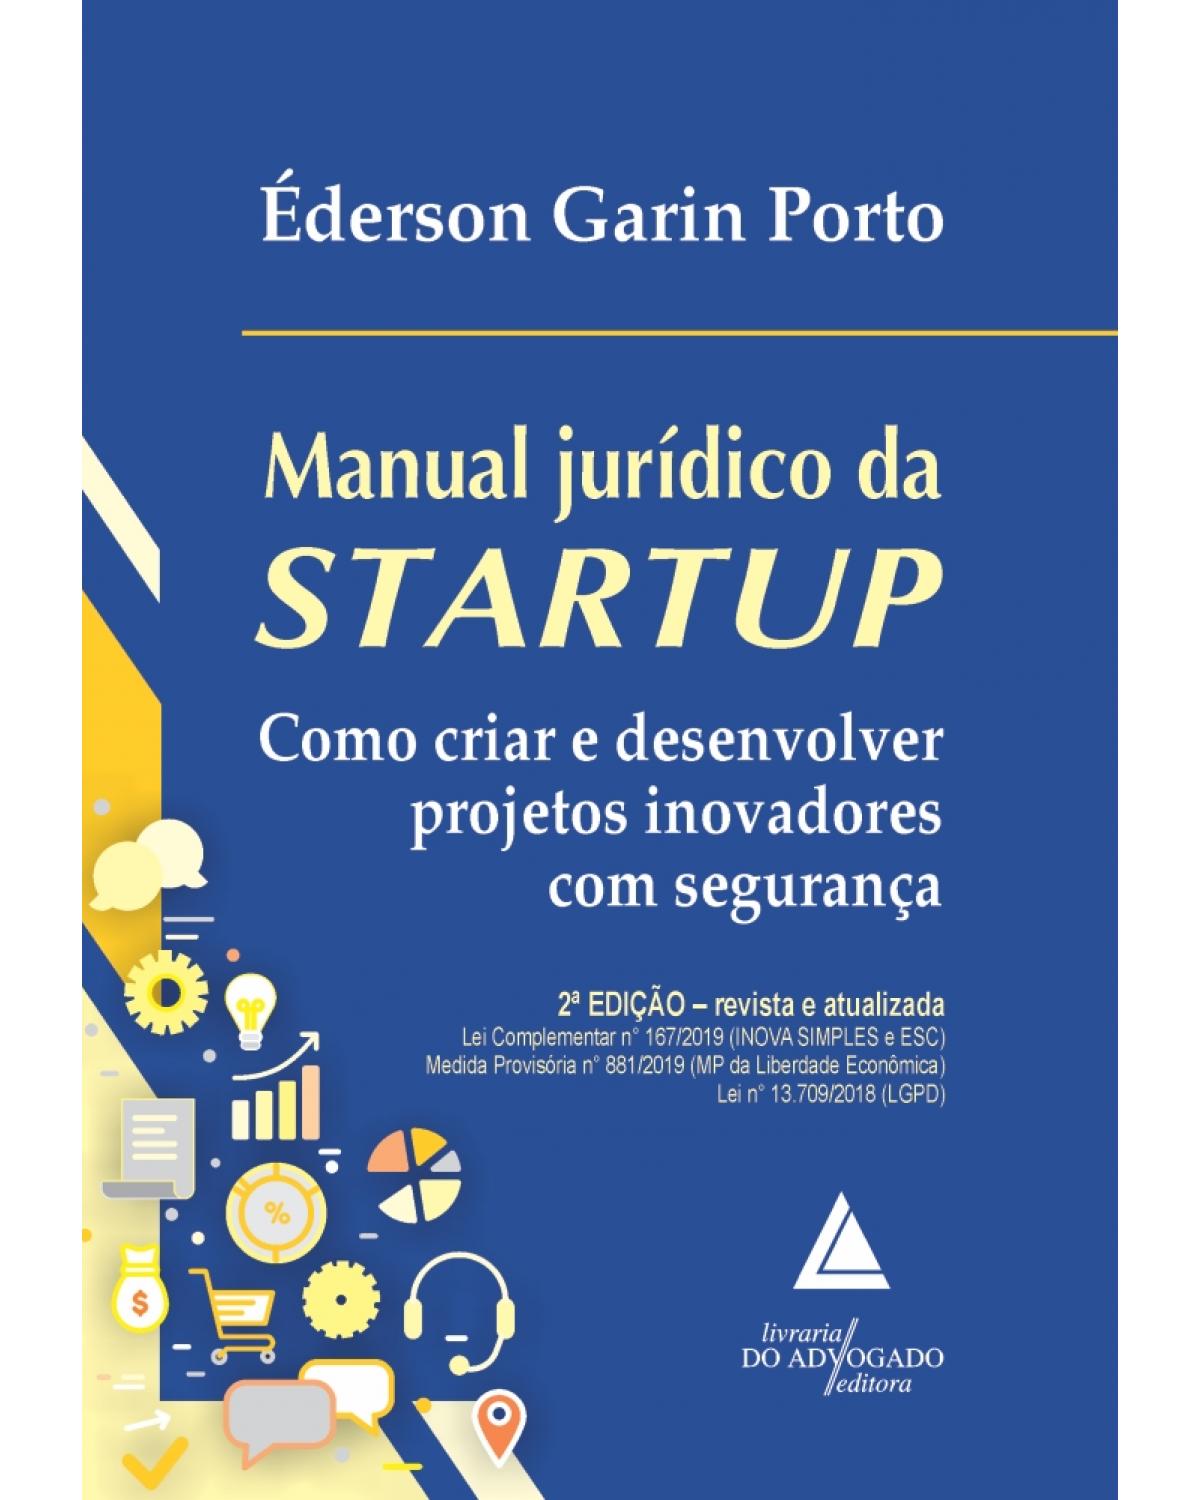 Manual jurídico da startup: como criar e desenvolver projetos inovadores com segurança - 2ª Edição | 2019